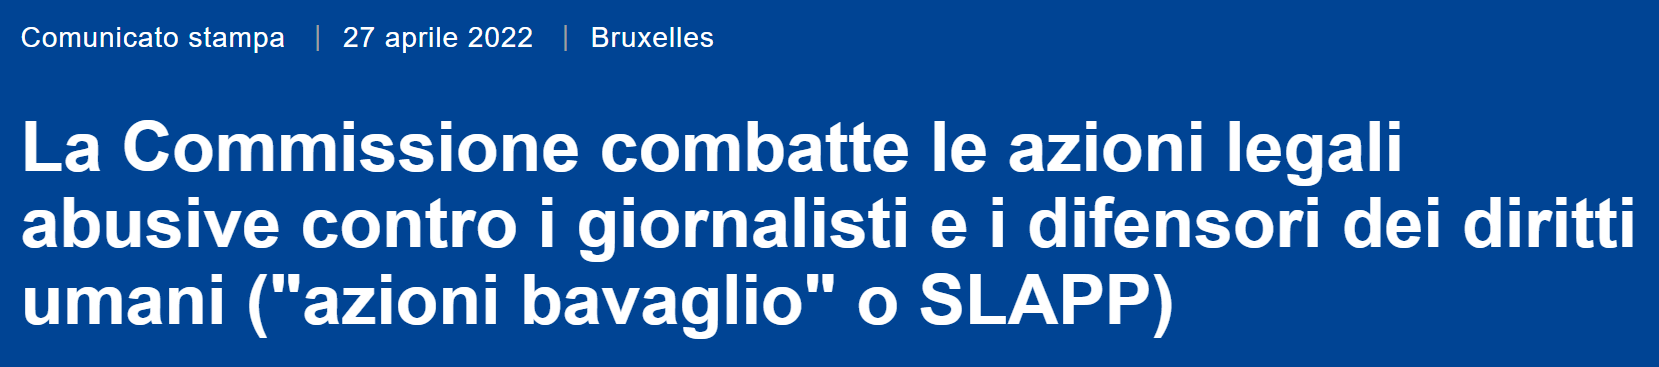 Immagine con titolo di comunicato stampa della Commissione europea di aprile 2022: La Commissione combatte le azioni legali abusive contro i giornalisti e i difensori dei diritti umani (“azioni bavaglio” o SLAPP) 